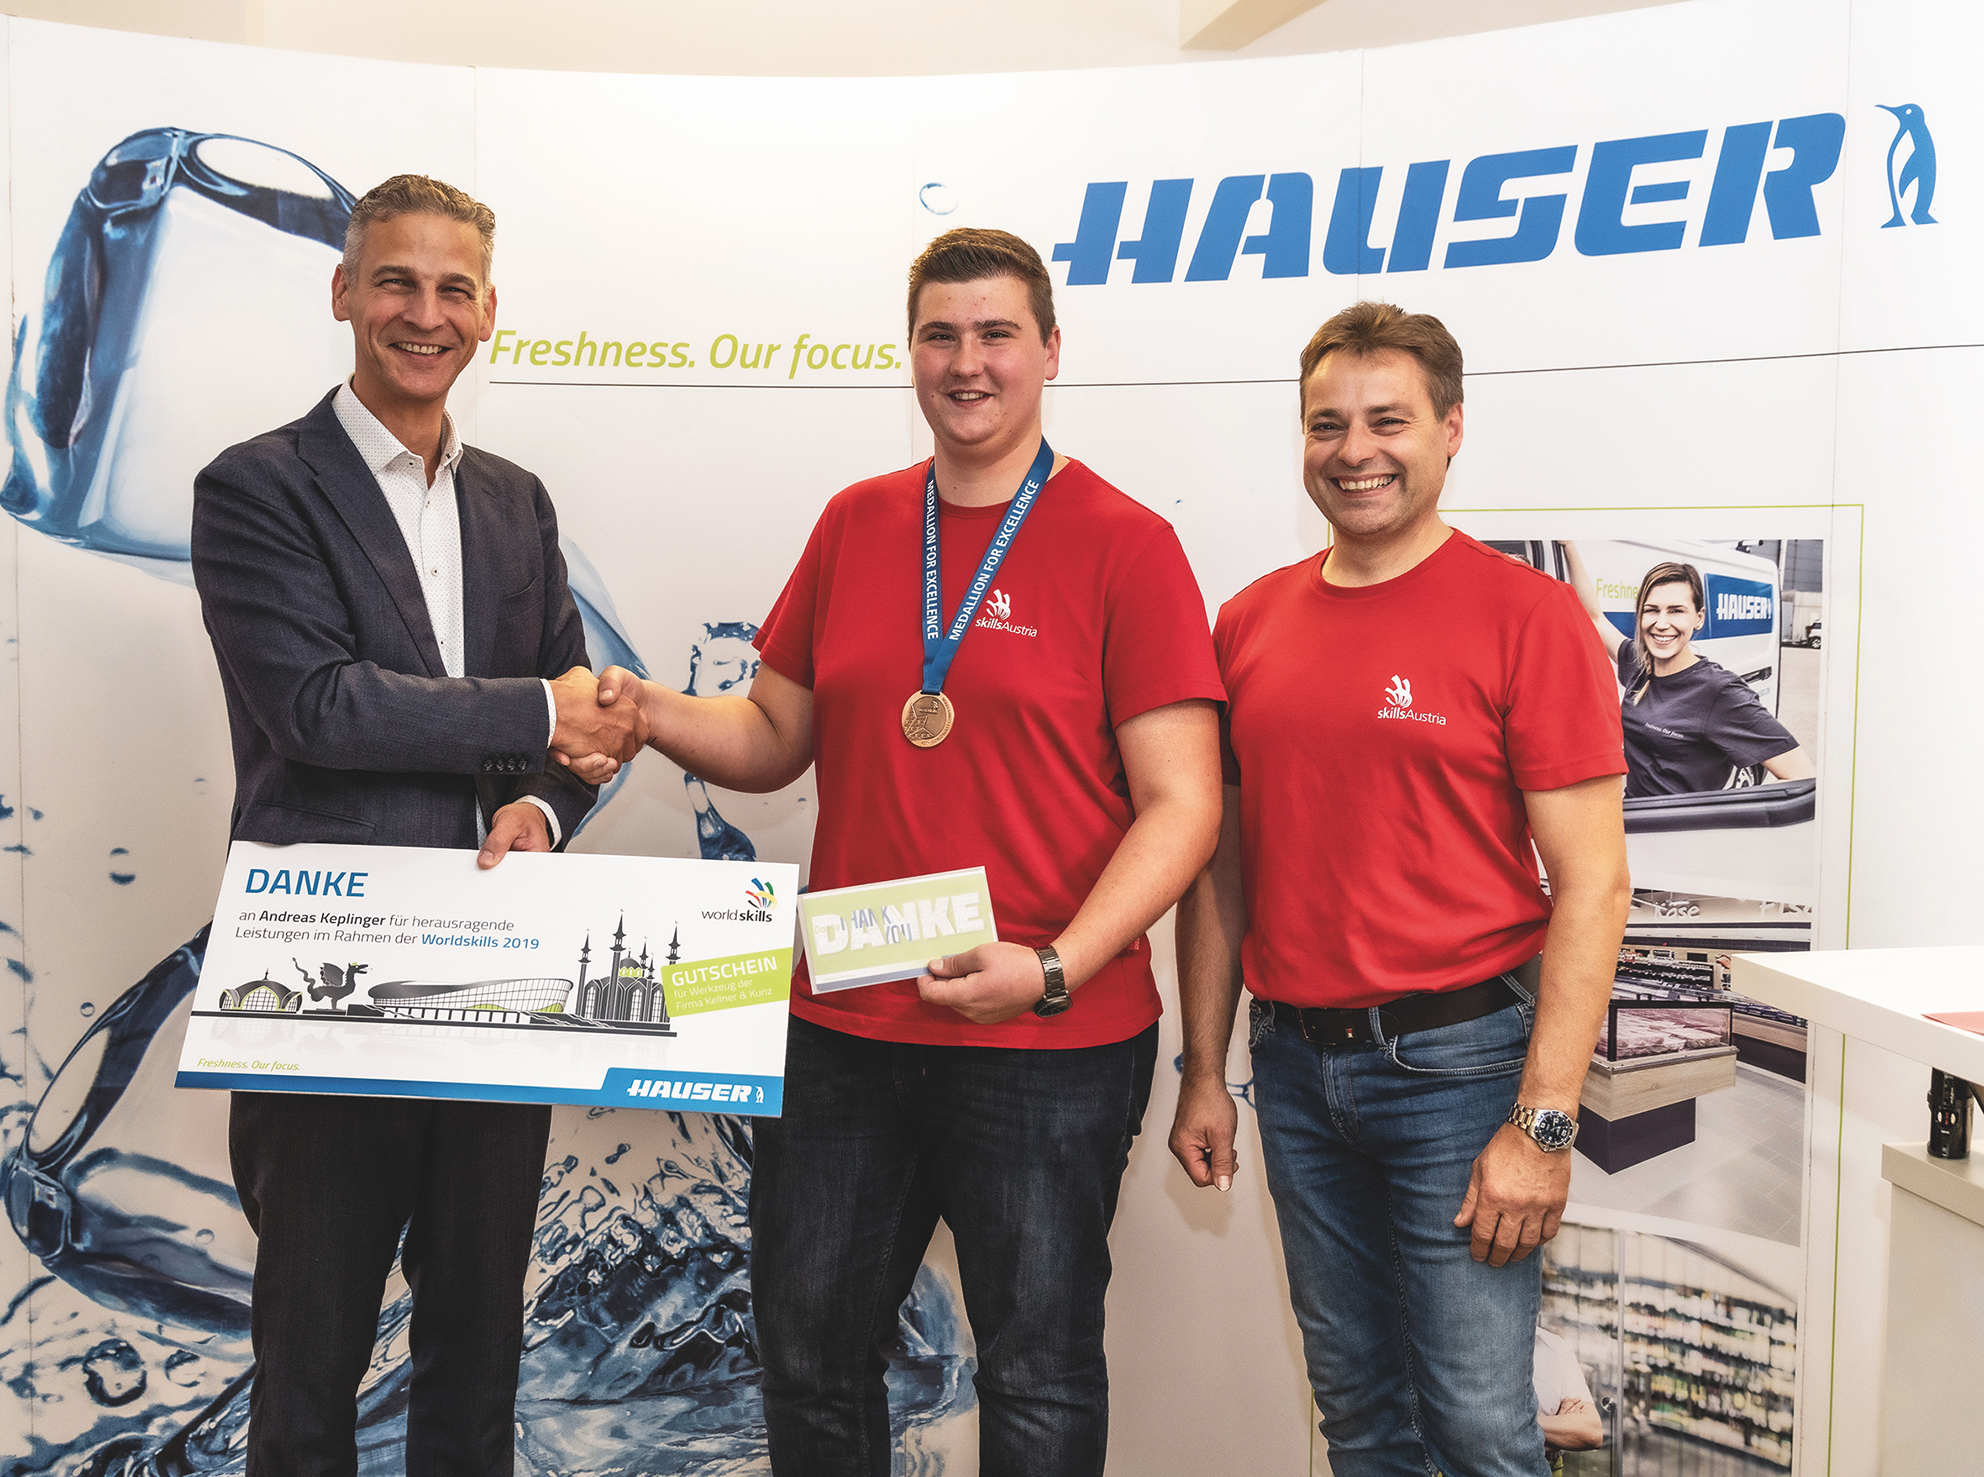 HAUSER CEO Thomas Loibl (vlevo) a školitel Rupert Danninger (vpravo) odměnili Andrease Keplingera prémií za jeho výkony na soutěži WorldSkills